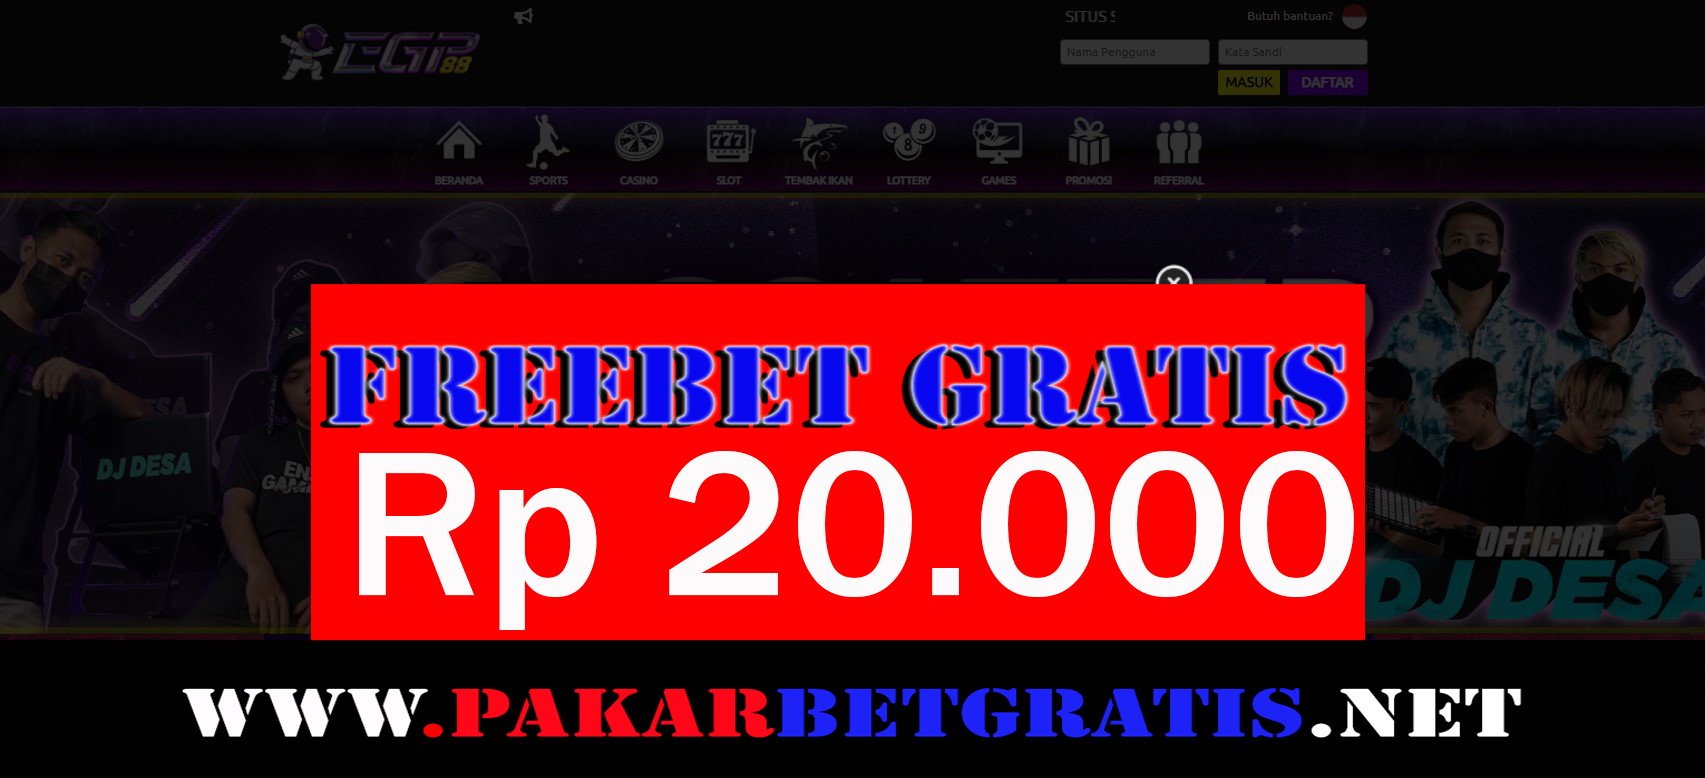 egp88 freebet gratis rp 20.000 tanpa deposit